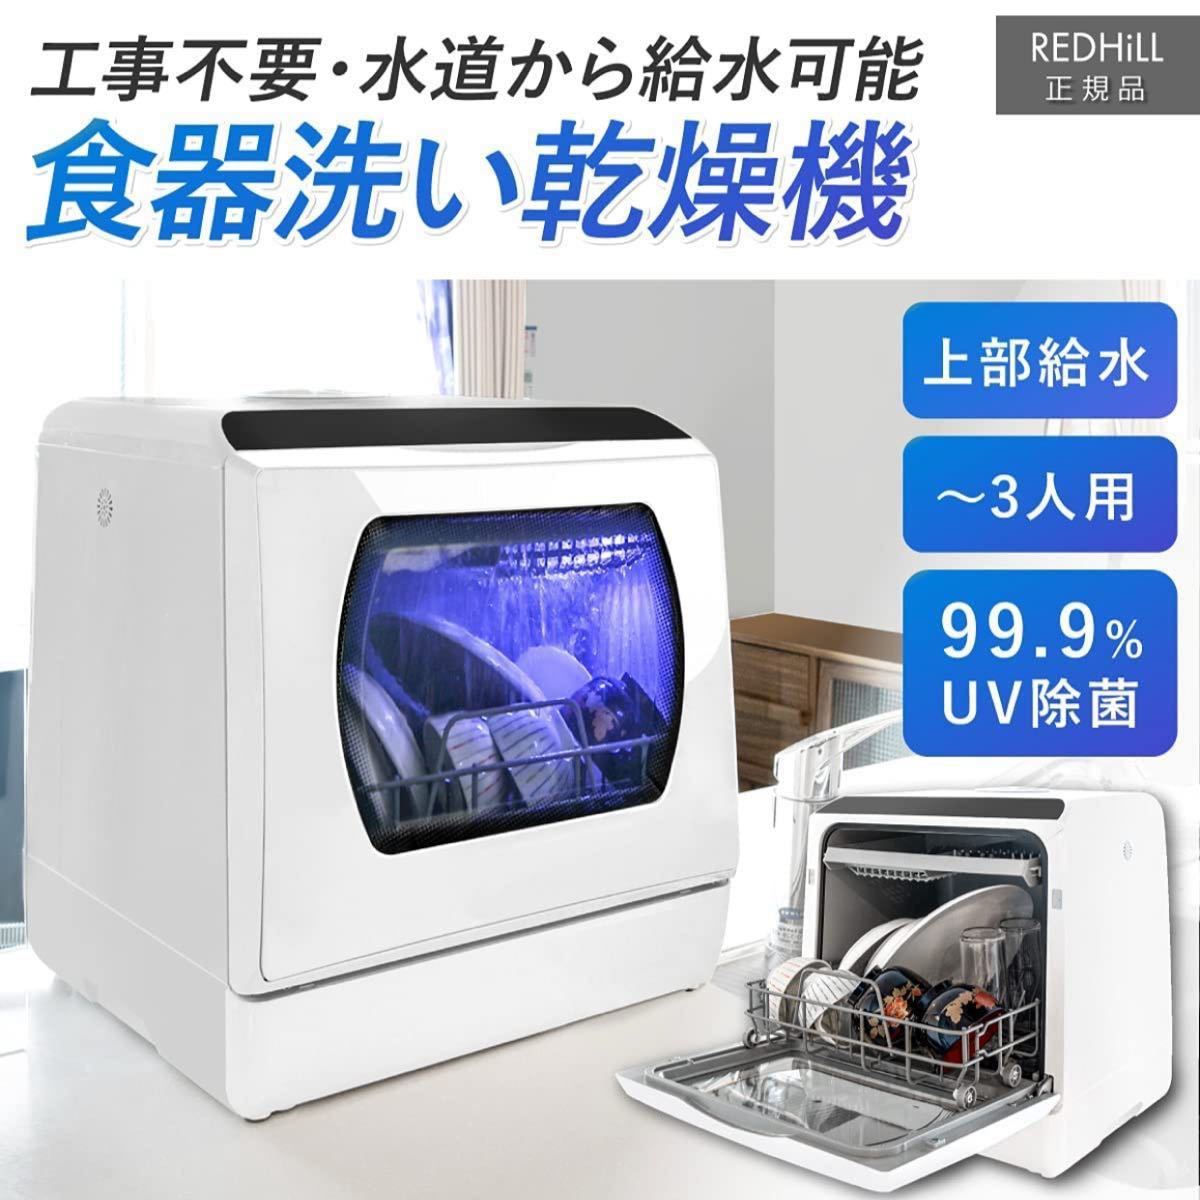 最新モデル セール UV消毒 食器洗い洗浄機 食洗機 食器乾燥機 食器洗い 乾燥機 3人用 UV除菌 高温洗浄 工事不要 ブラック